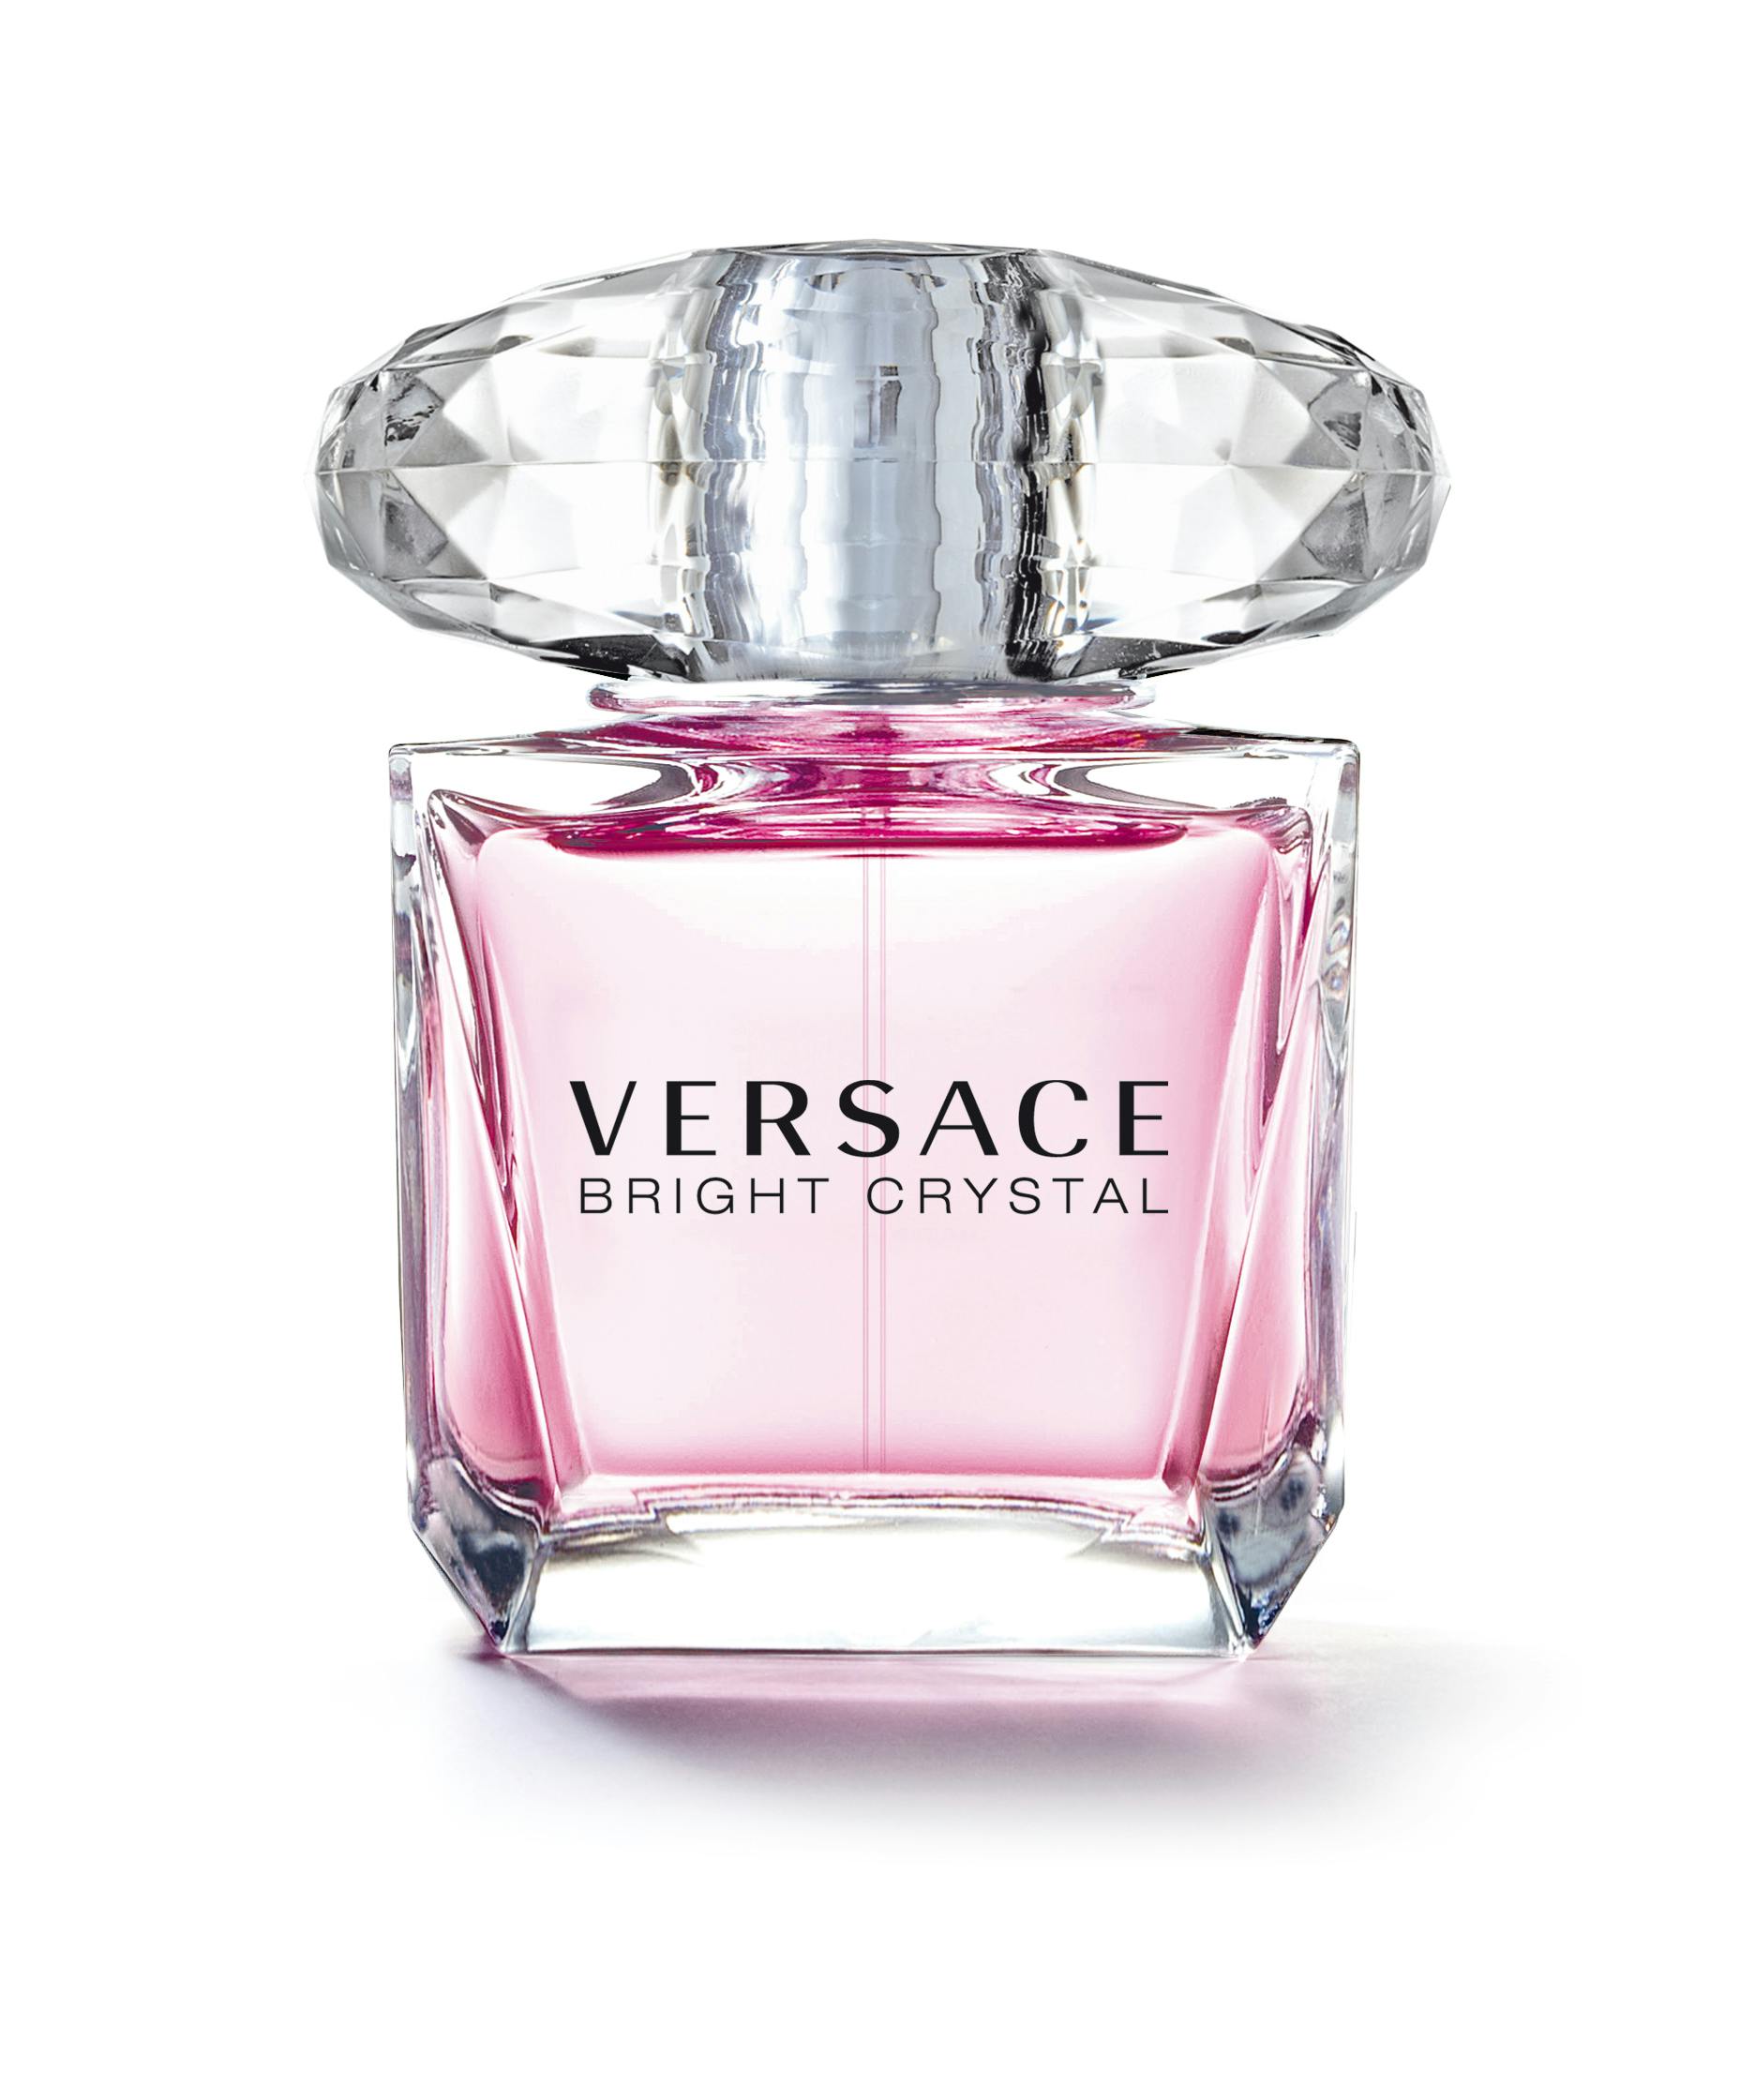 Versace Bright Crystal Eau De Toilette 50ml